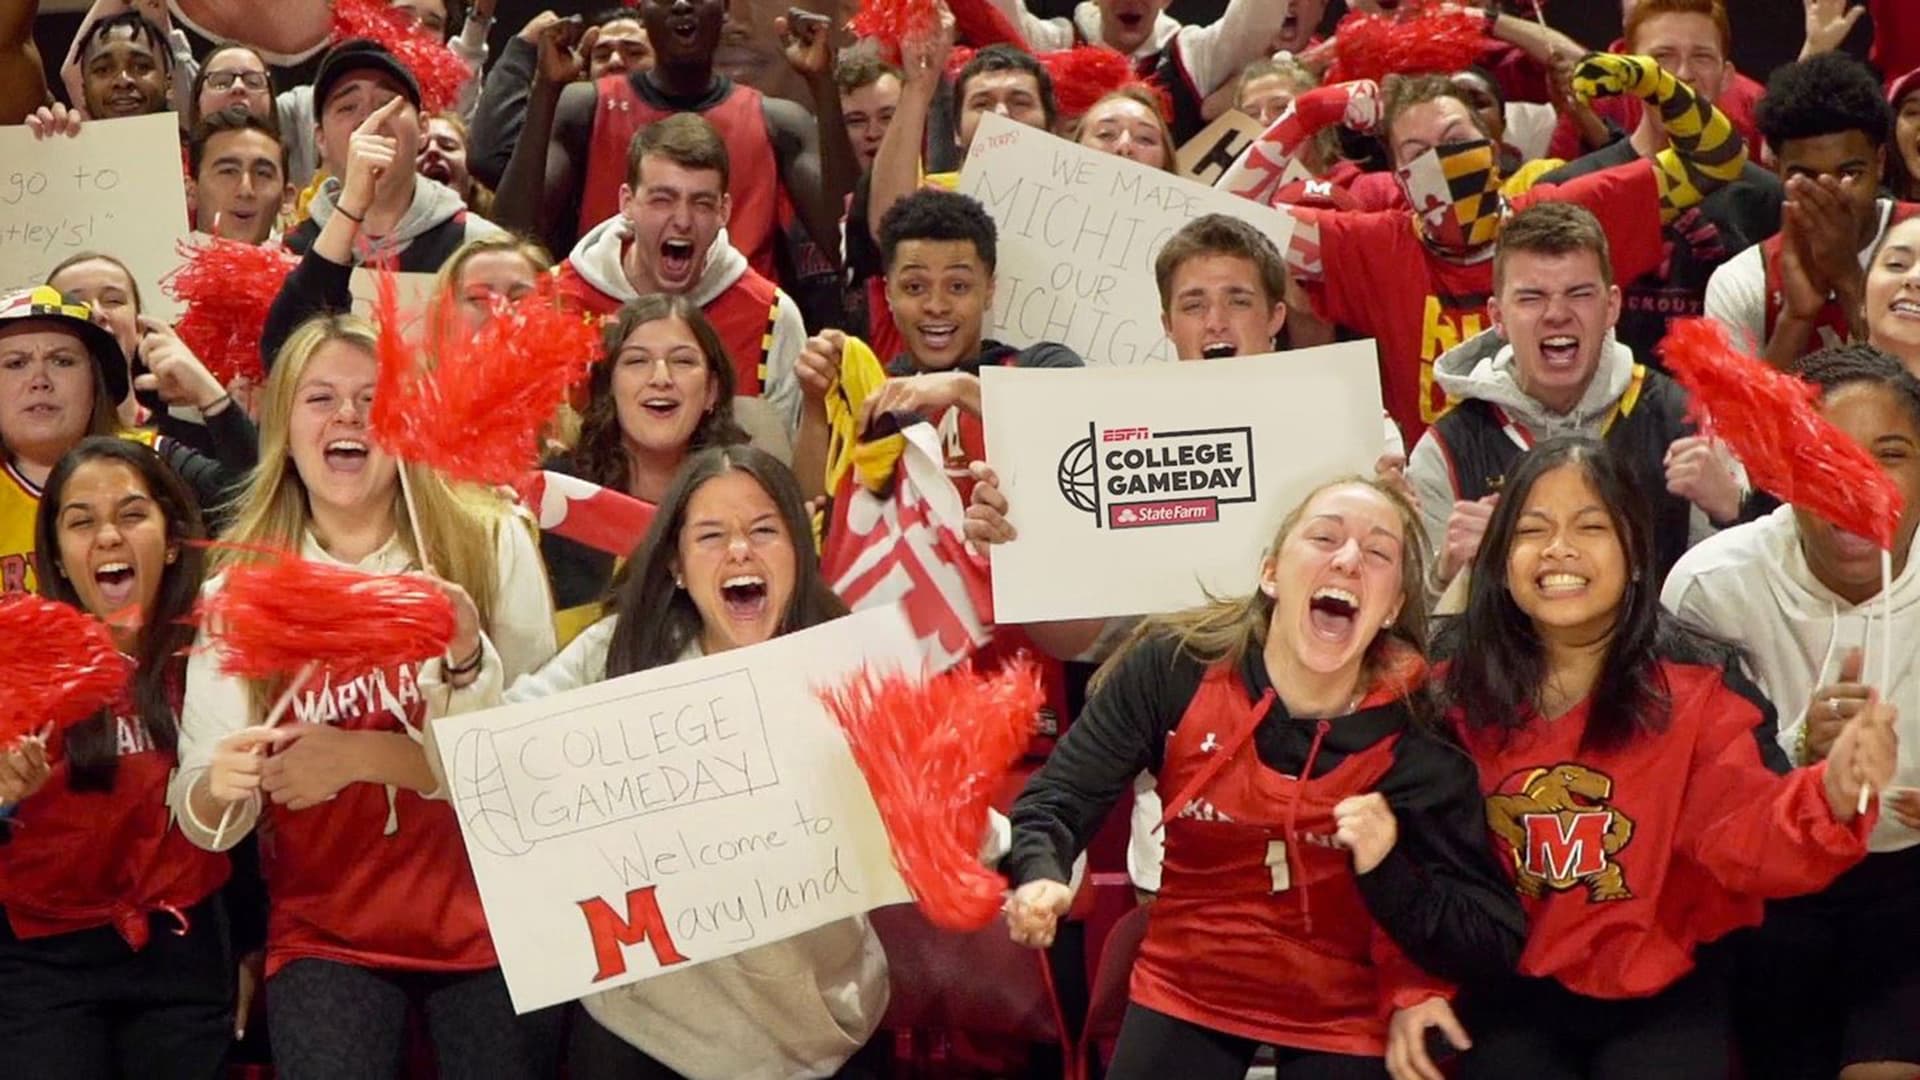 Maryland students cheer at GameDay